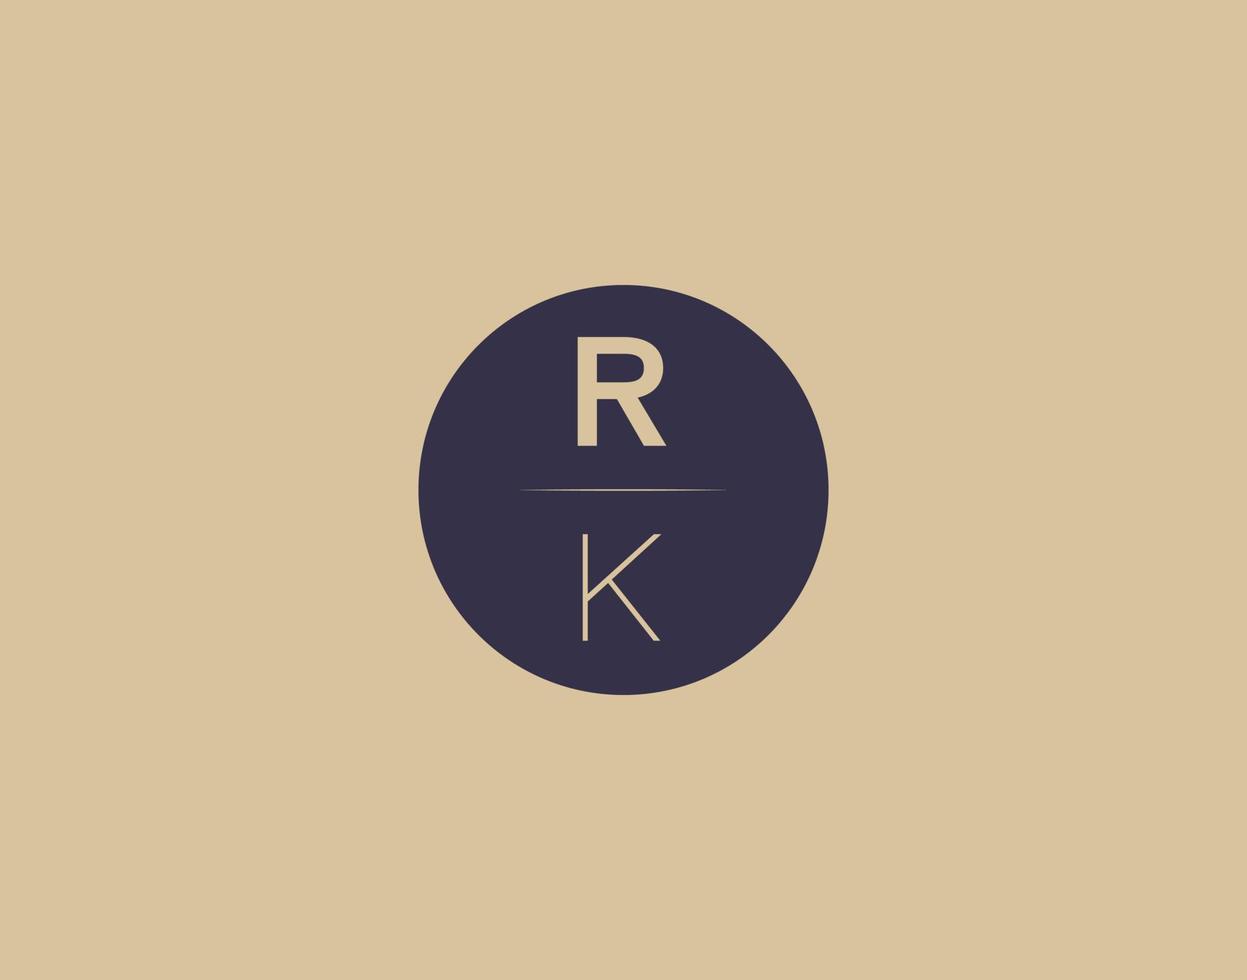 Imágenes de vector de diseño de logotipo elegante moderno de letra rk